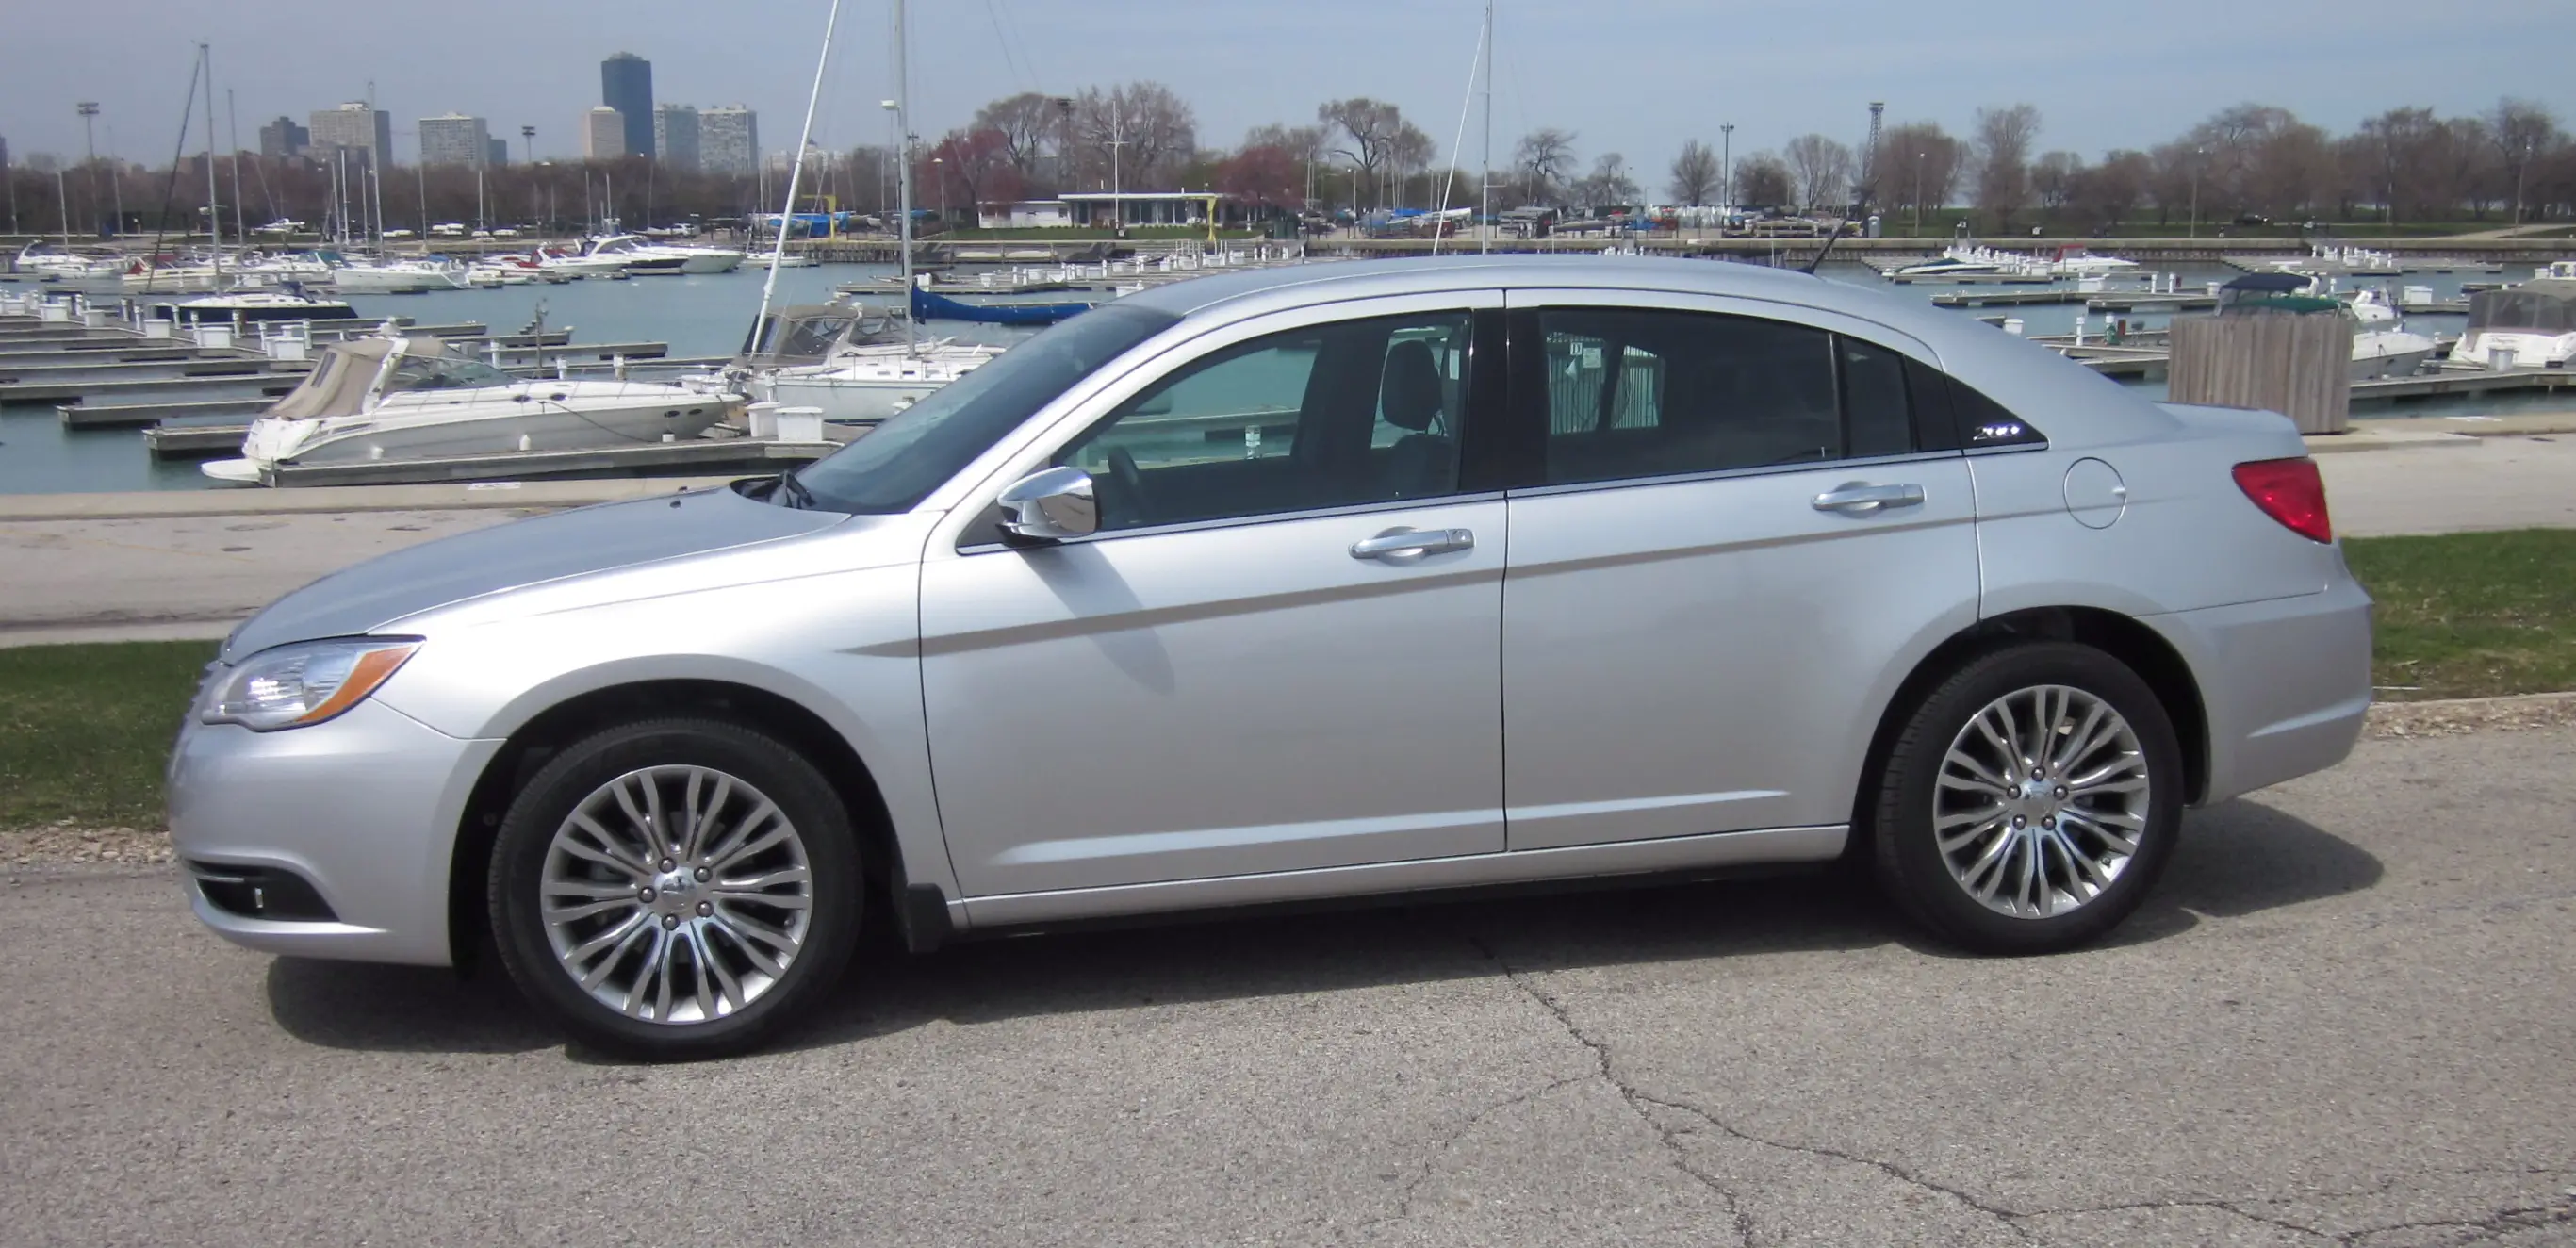 200 Chrysler 2011 #1